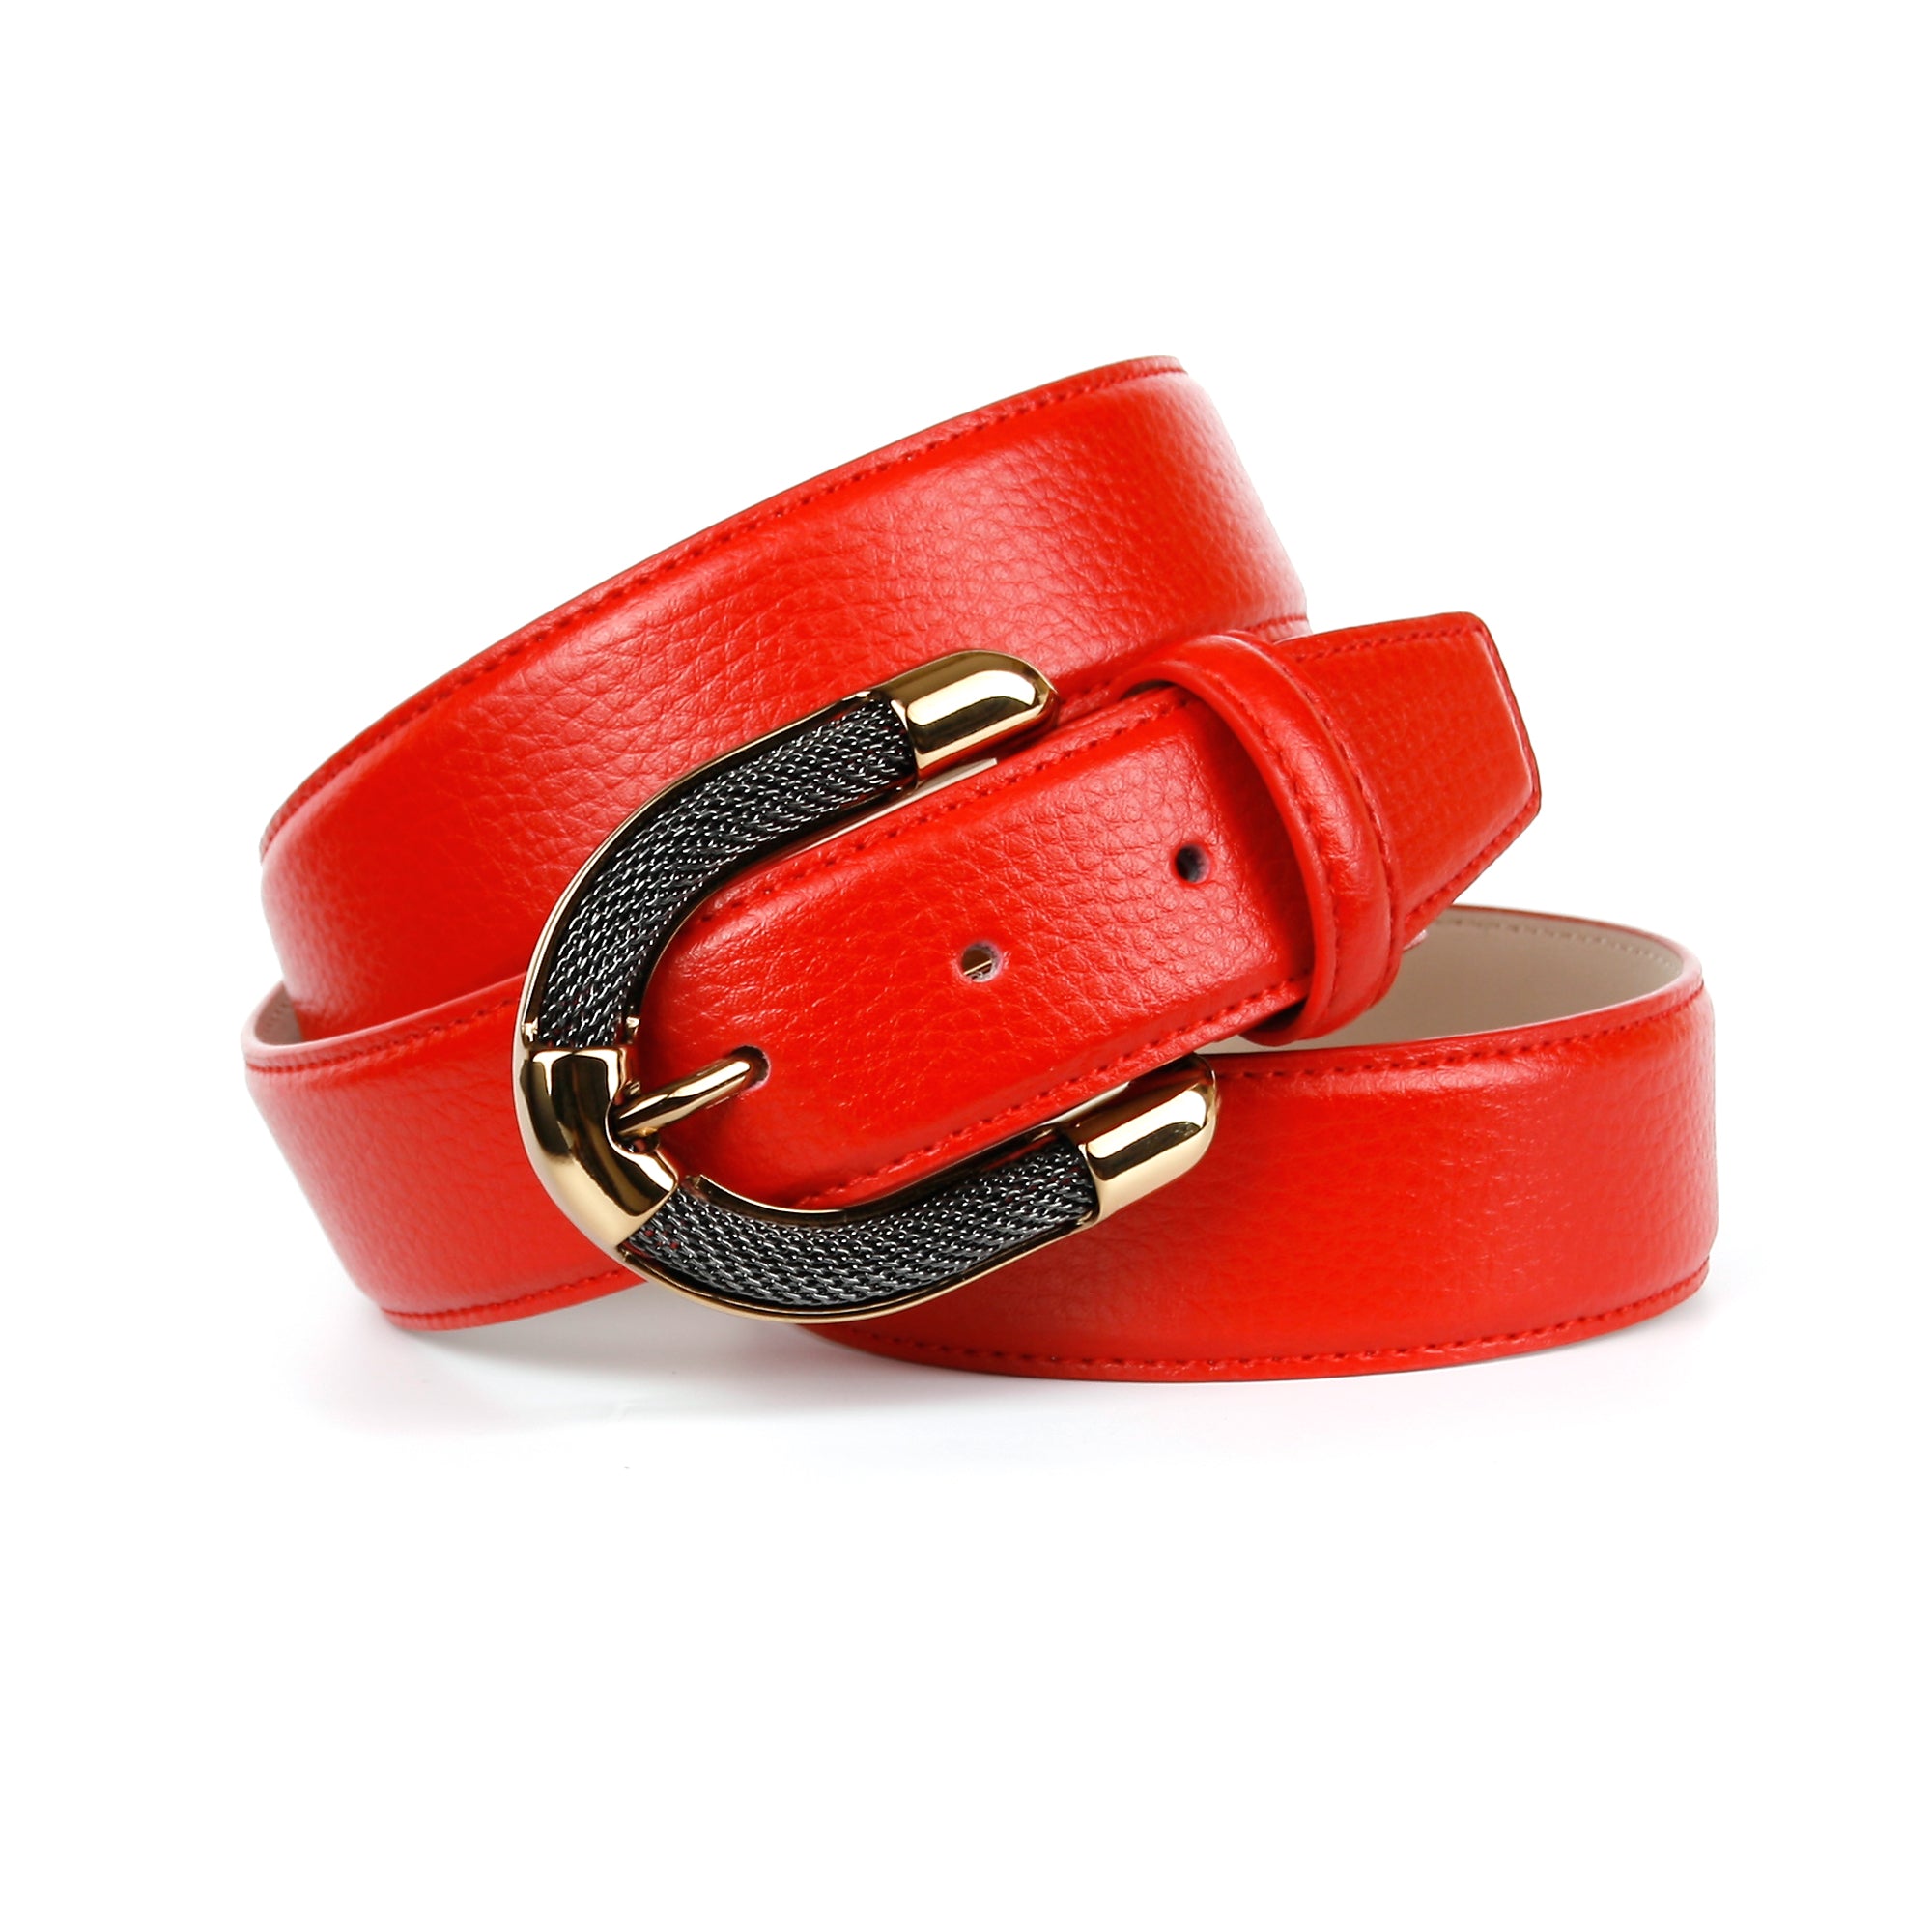 Schmuck-Schließe mit anthonicrown – in Femininer Rot aufwendiger Ledergürtel